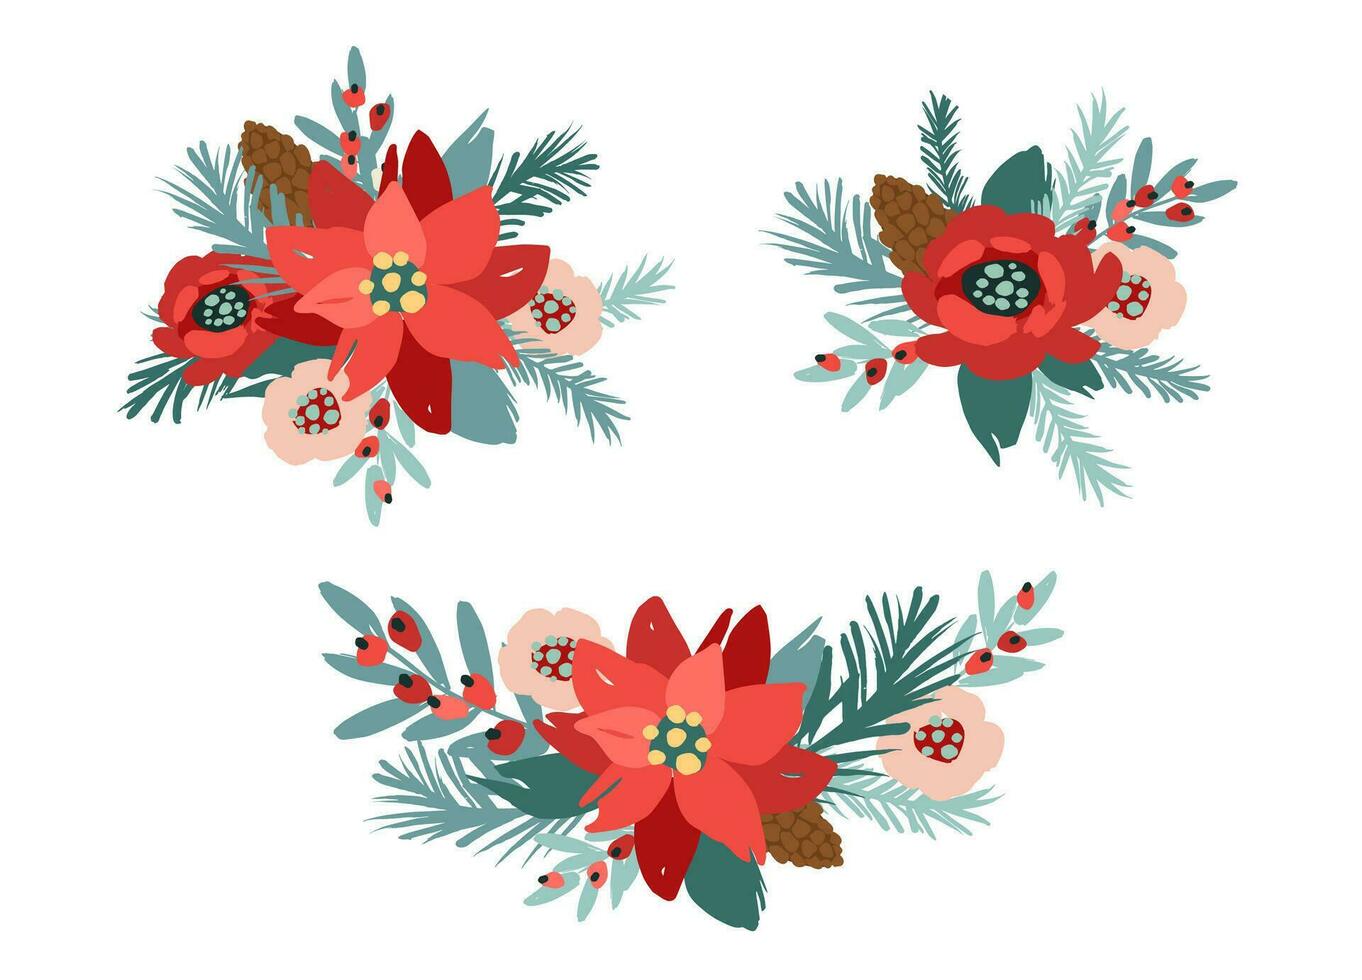 einstellen von Weihnachten Blumen- Design Elemente. Blumen, Blätter, Nadeln, Beeren Vektor Abbildungen